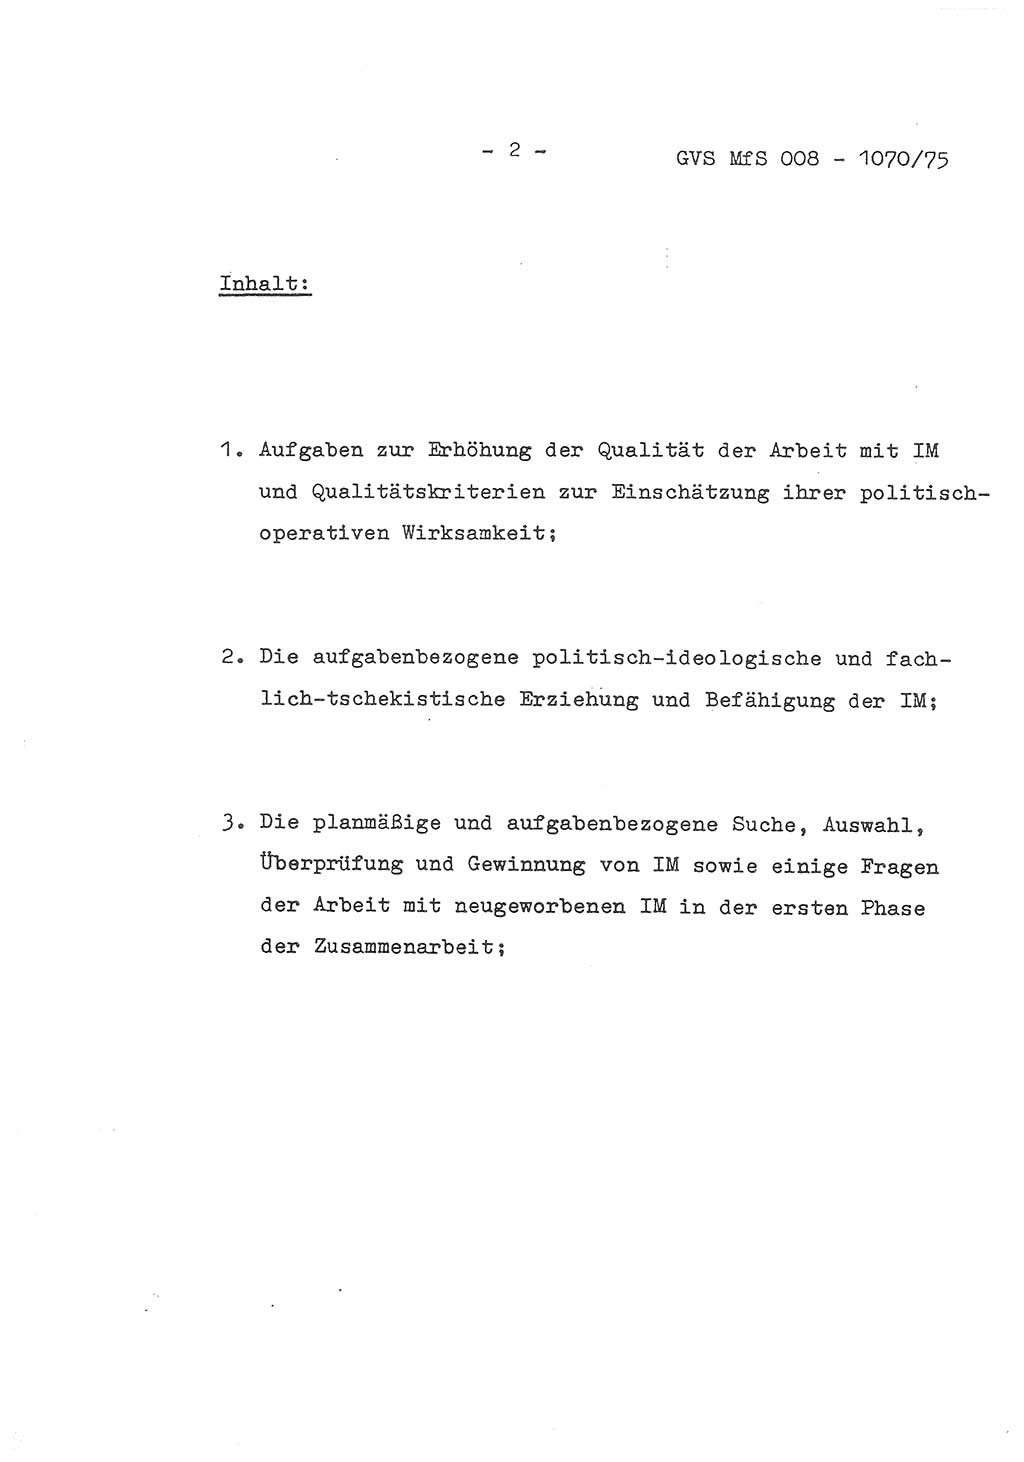 Auszug aus dem Referat des Genossen Minister (Generaloberst Erich Mielke) für das zentrale Führungsseminar (MfS) zu Grundfragen der Arbeit mit den inoffiziellen Mitarbeitern (IM), Manuskript, Deutsche Demokratische Republik (DDR), Ministerium für Staatssicherheit (MfS), Der Minister, Geheime Verschlußsache (GVS) 008-1070/75, Berlin 1975, Blatt 2 (Ref. Fü.-Sem. DDR MfS Min. GVS 008-1070/75 1975, Bl. 2)